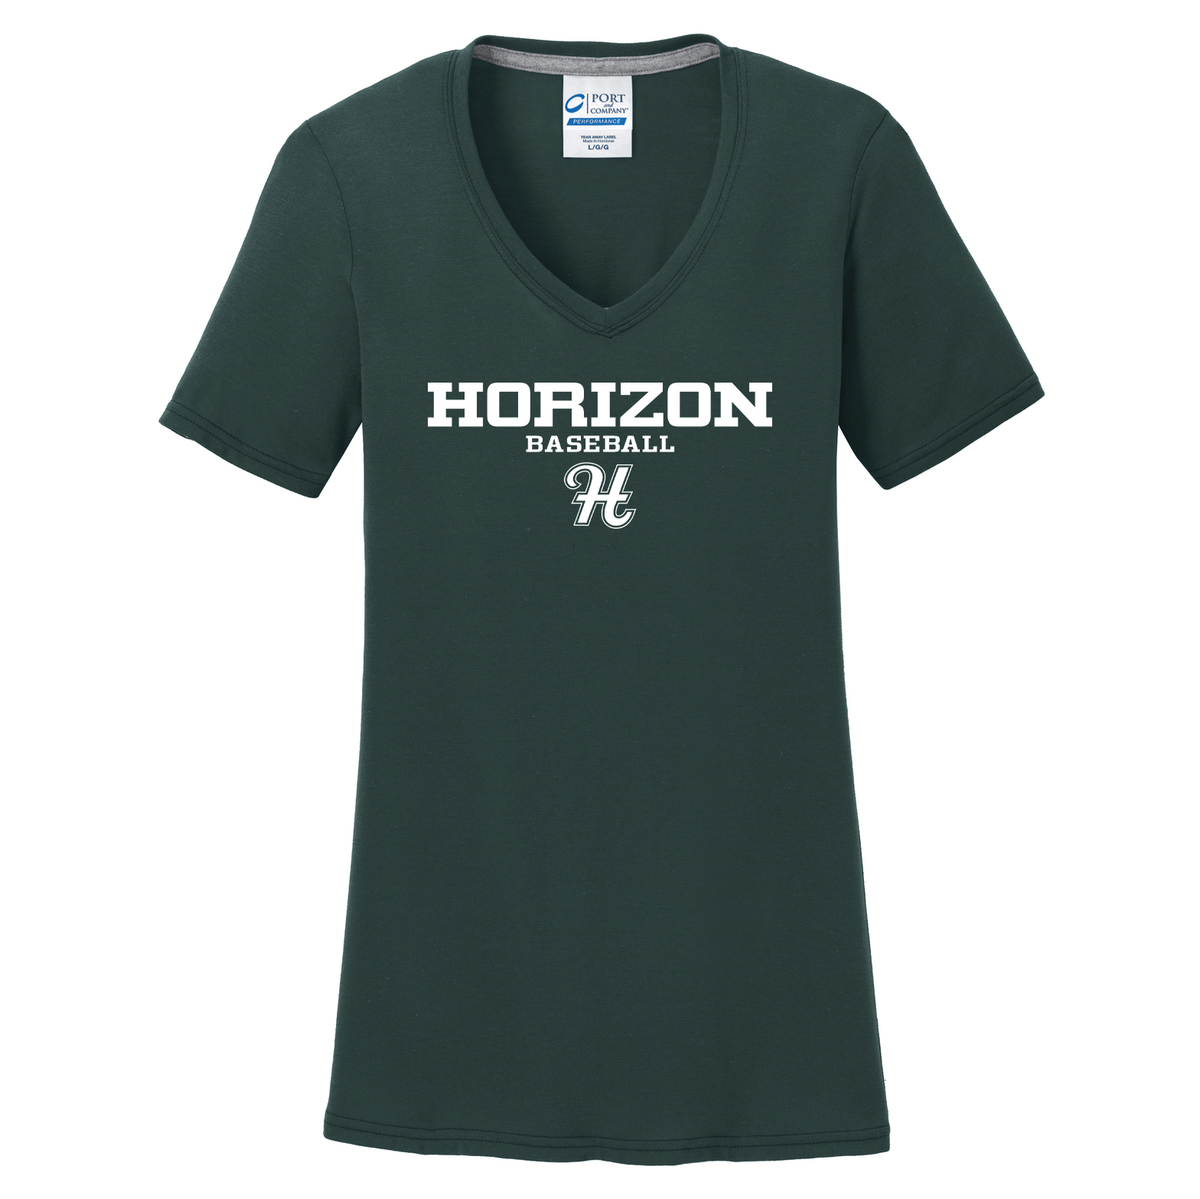 Horizon Baseball Women's T-Shirt